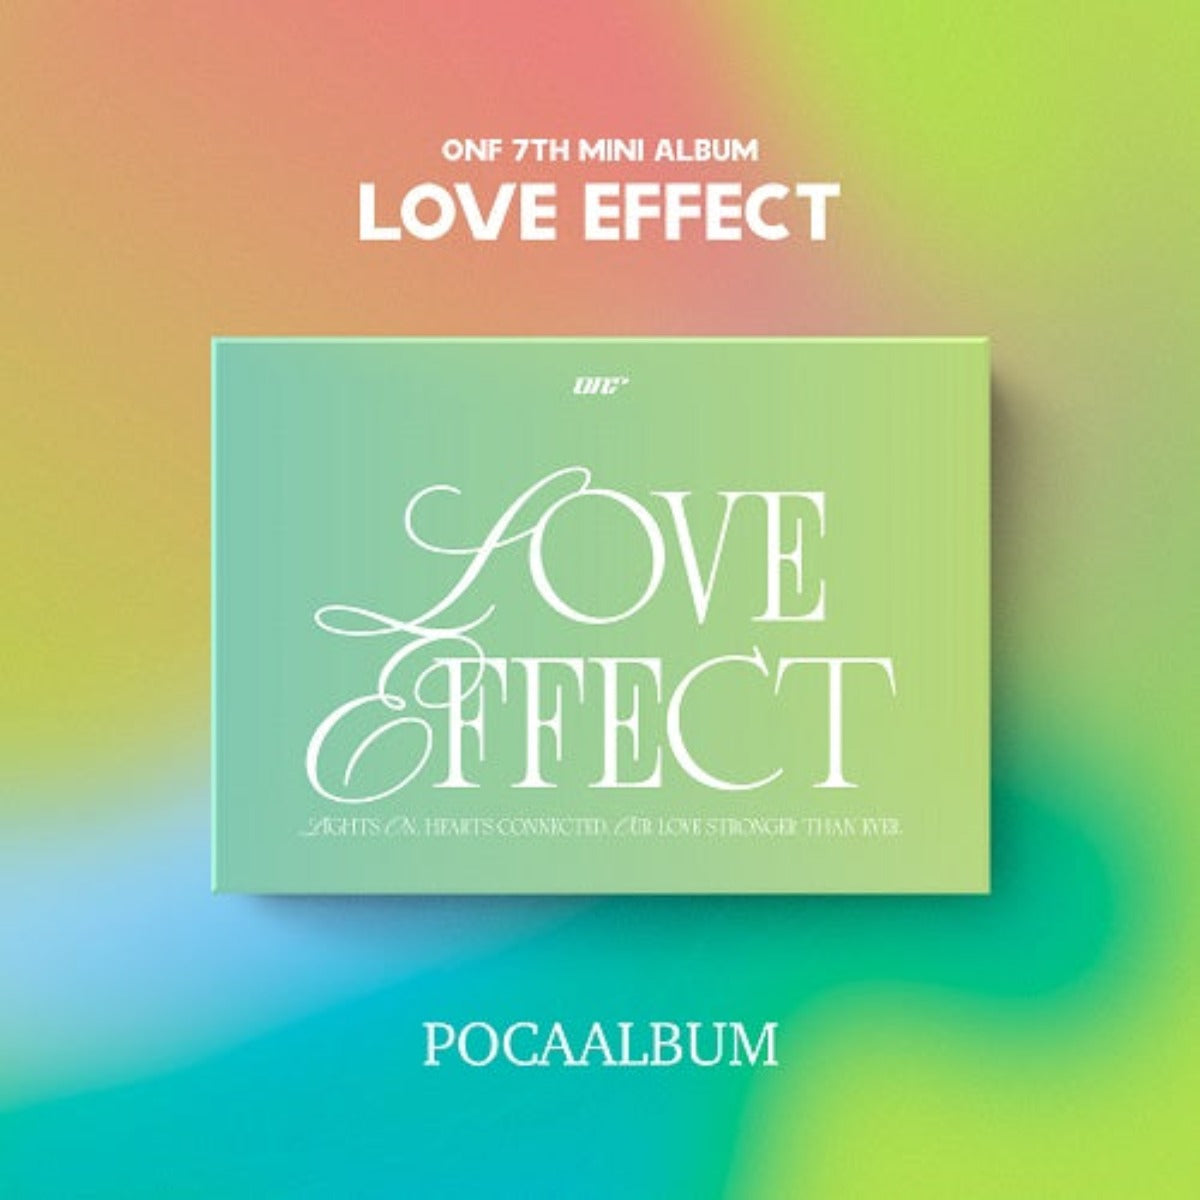 ONF - LOVE EFFECT 7TH MINI ALBUM (POCA version)